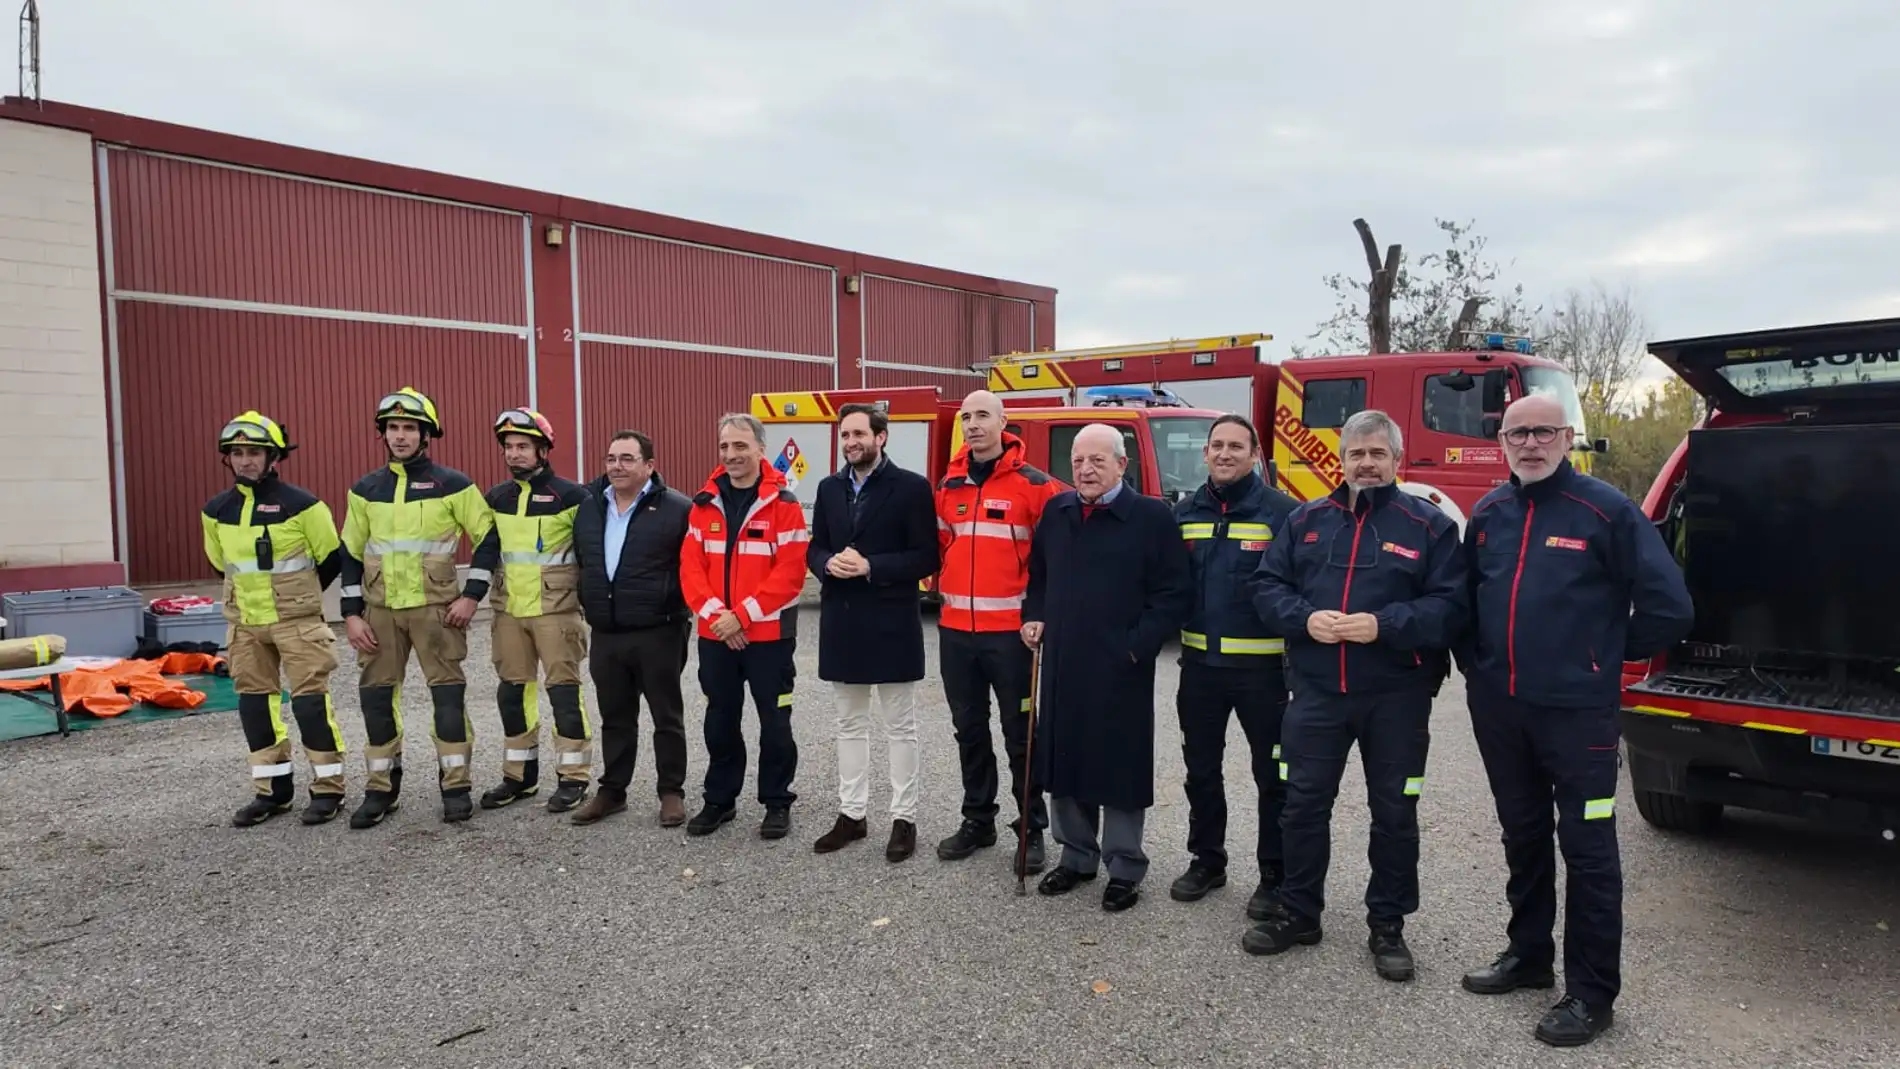 La DPH construirá un nuevo parque de bomberos entre Monzón y Binéfar